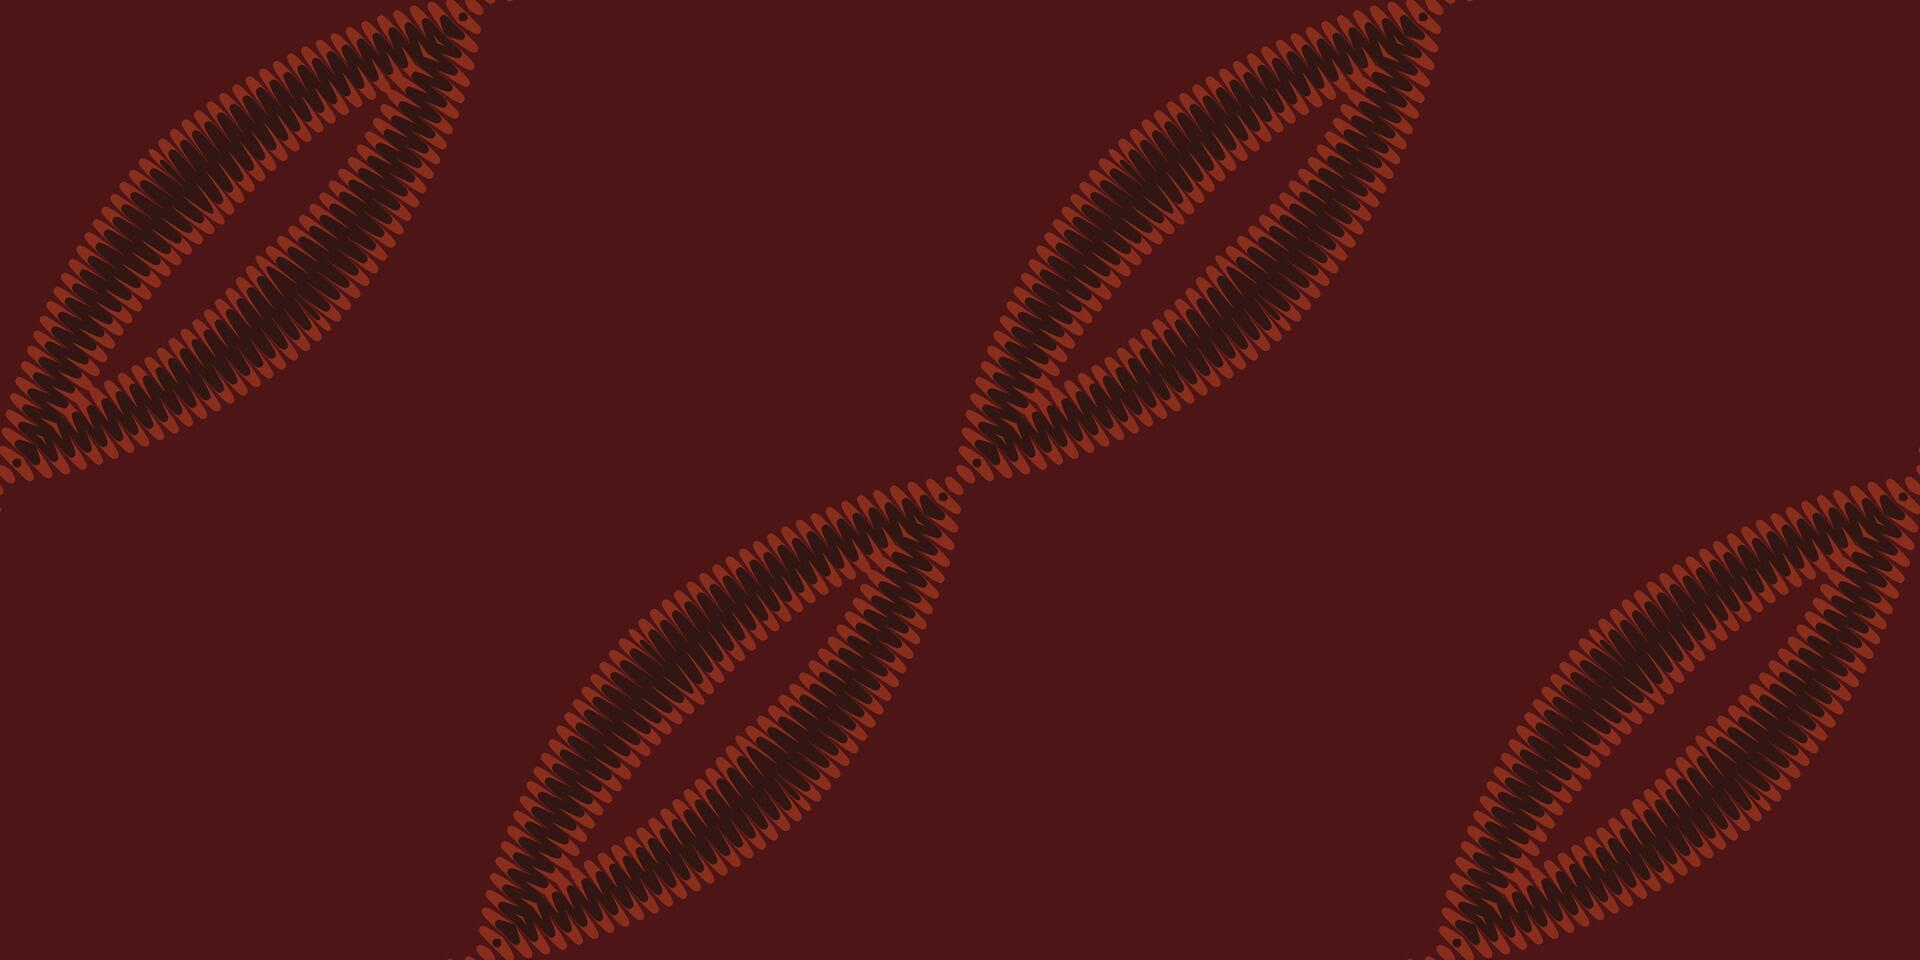 Afrikaanse ikat paisley borduurwerk. meetkundig etnisch oosters naadloos patroon traditioneel achtergrond. aztec stijl abstract vector illustratie. ontwerp voor textuur, kleding stof, kleding, inpakken, tapijt.